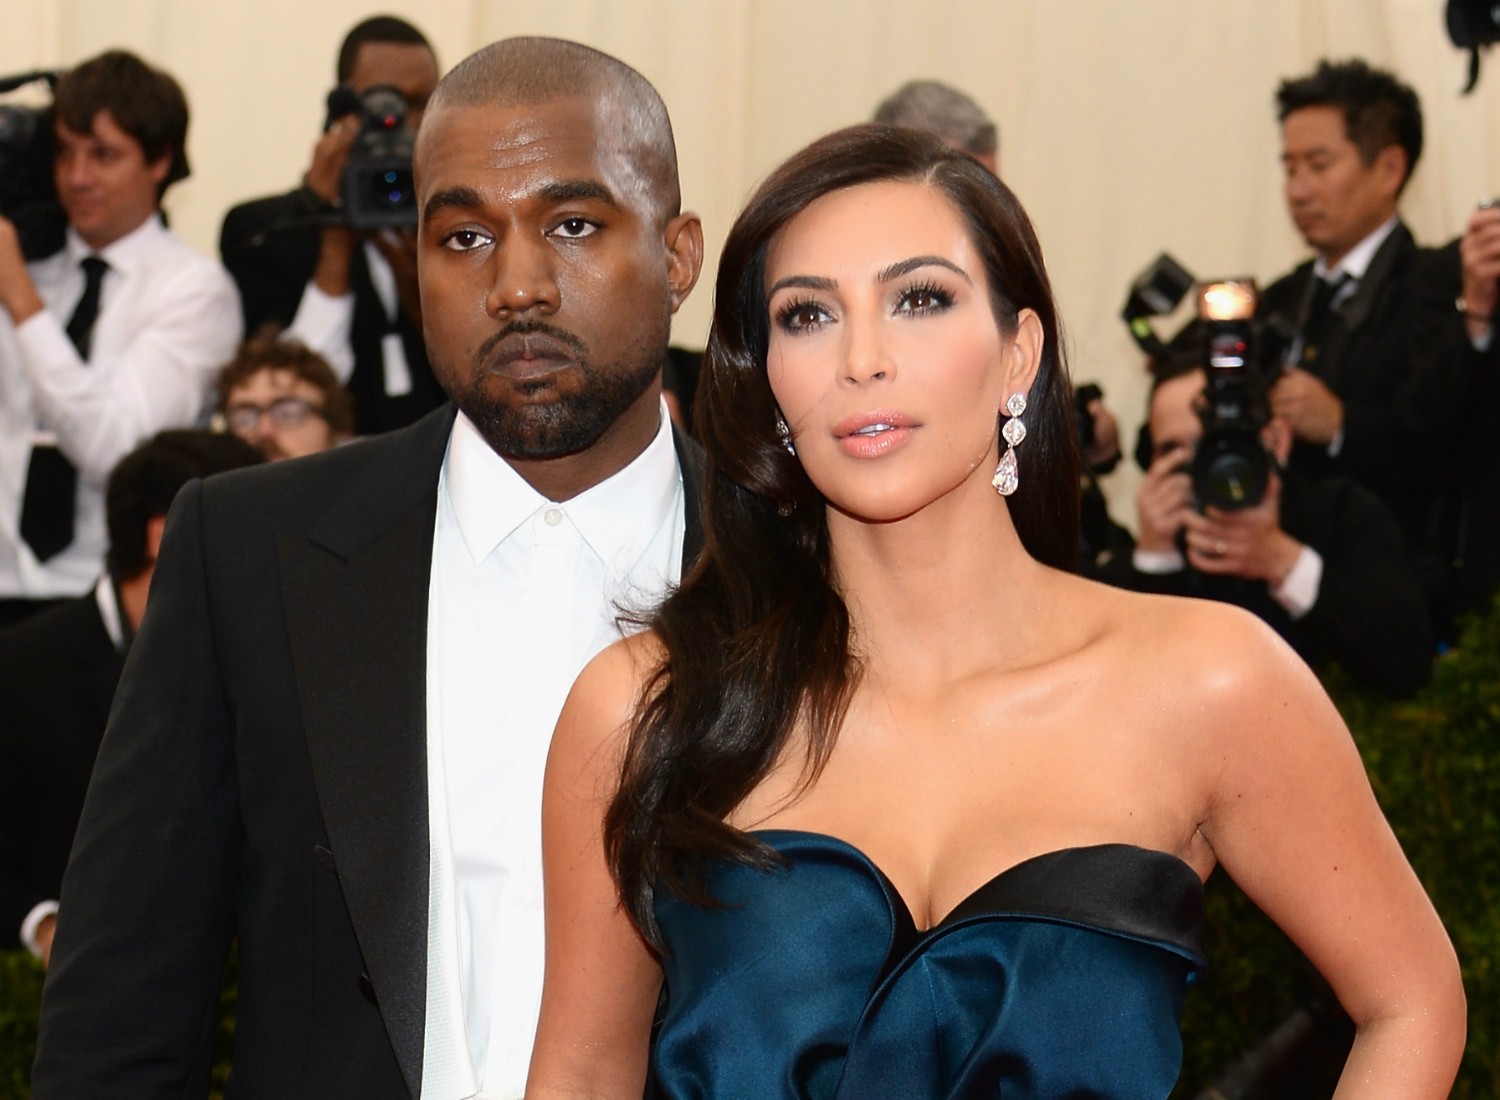 O casamento da socialite Kim Kardashian com o rapper Kanye West é aguardado para o primeiro semestre de 2014. Mas, oficialmente, eles continuam solteiros, embora vivam juntos na mansão das Kardashian quando ele não está em turnê. Em junho de 2013, nasceu a filha dos dois, North West. (Foto: Getty Images)